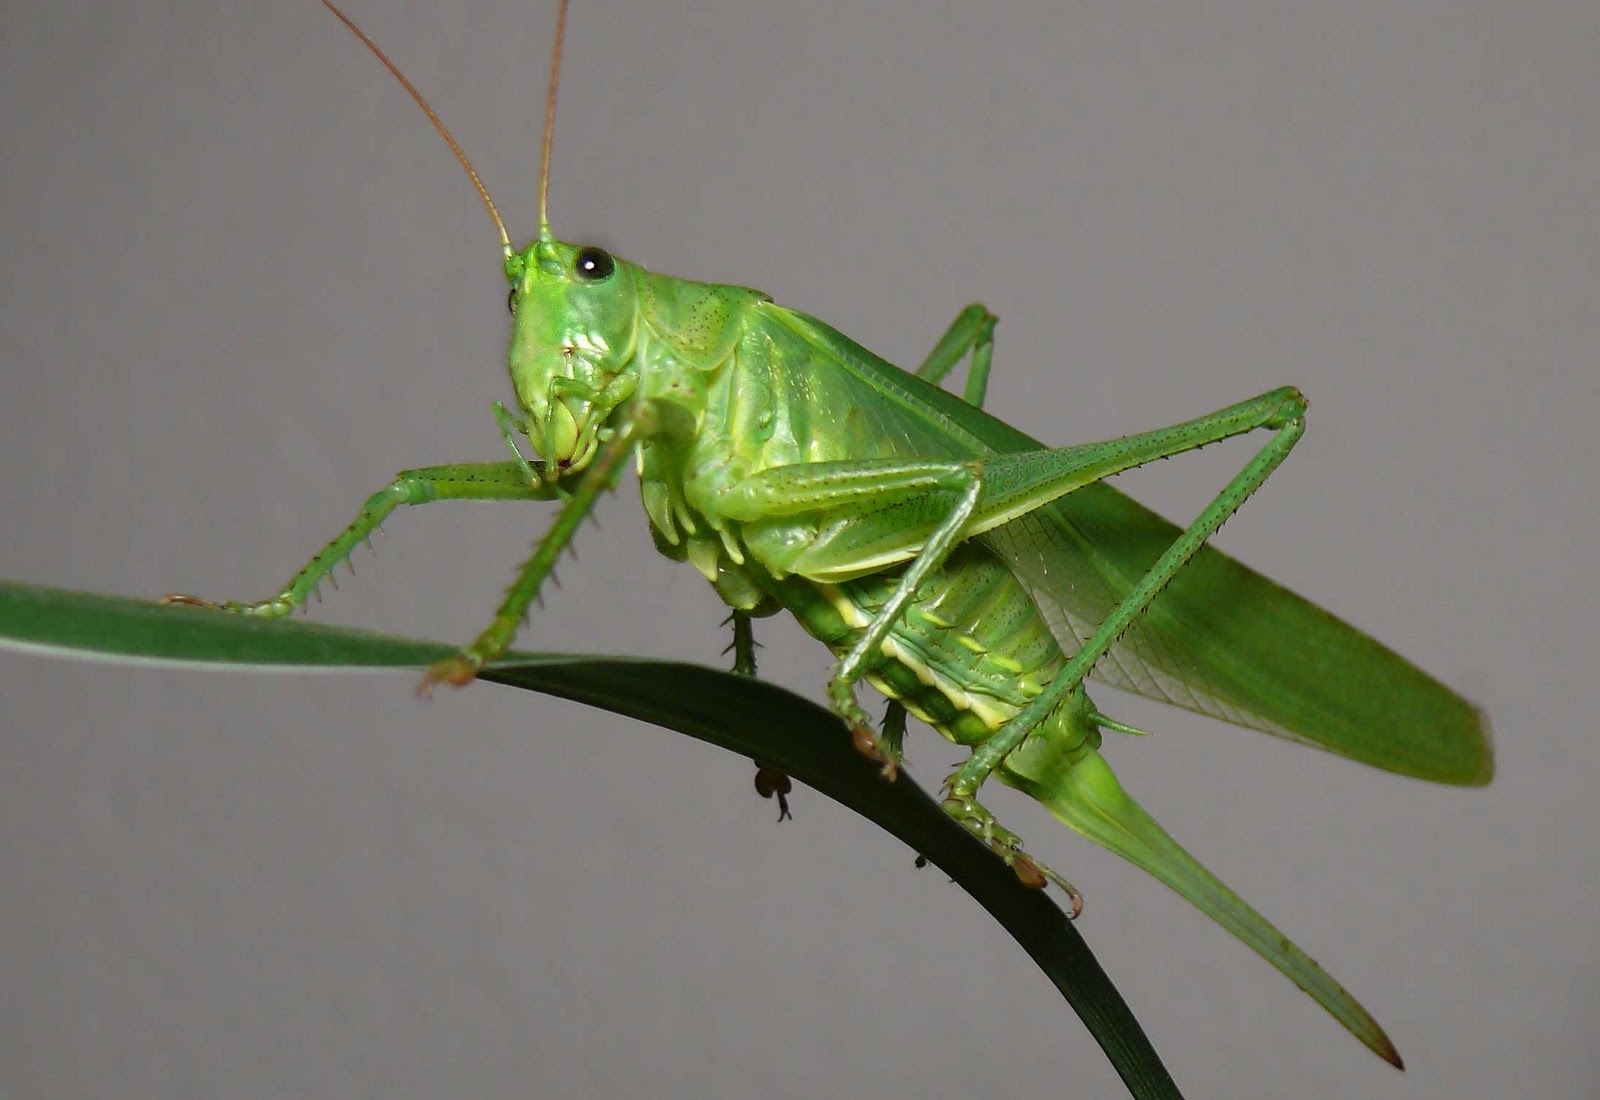 Grasshopper HD wallpapers, Desktop wallpaper - most viewed